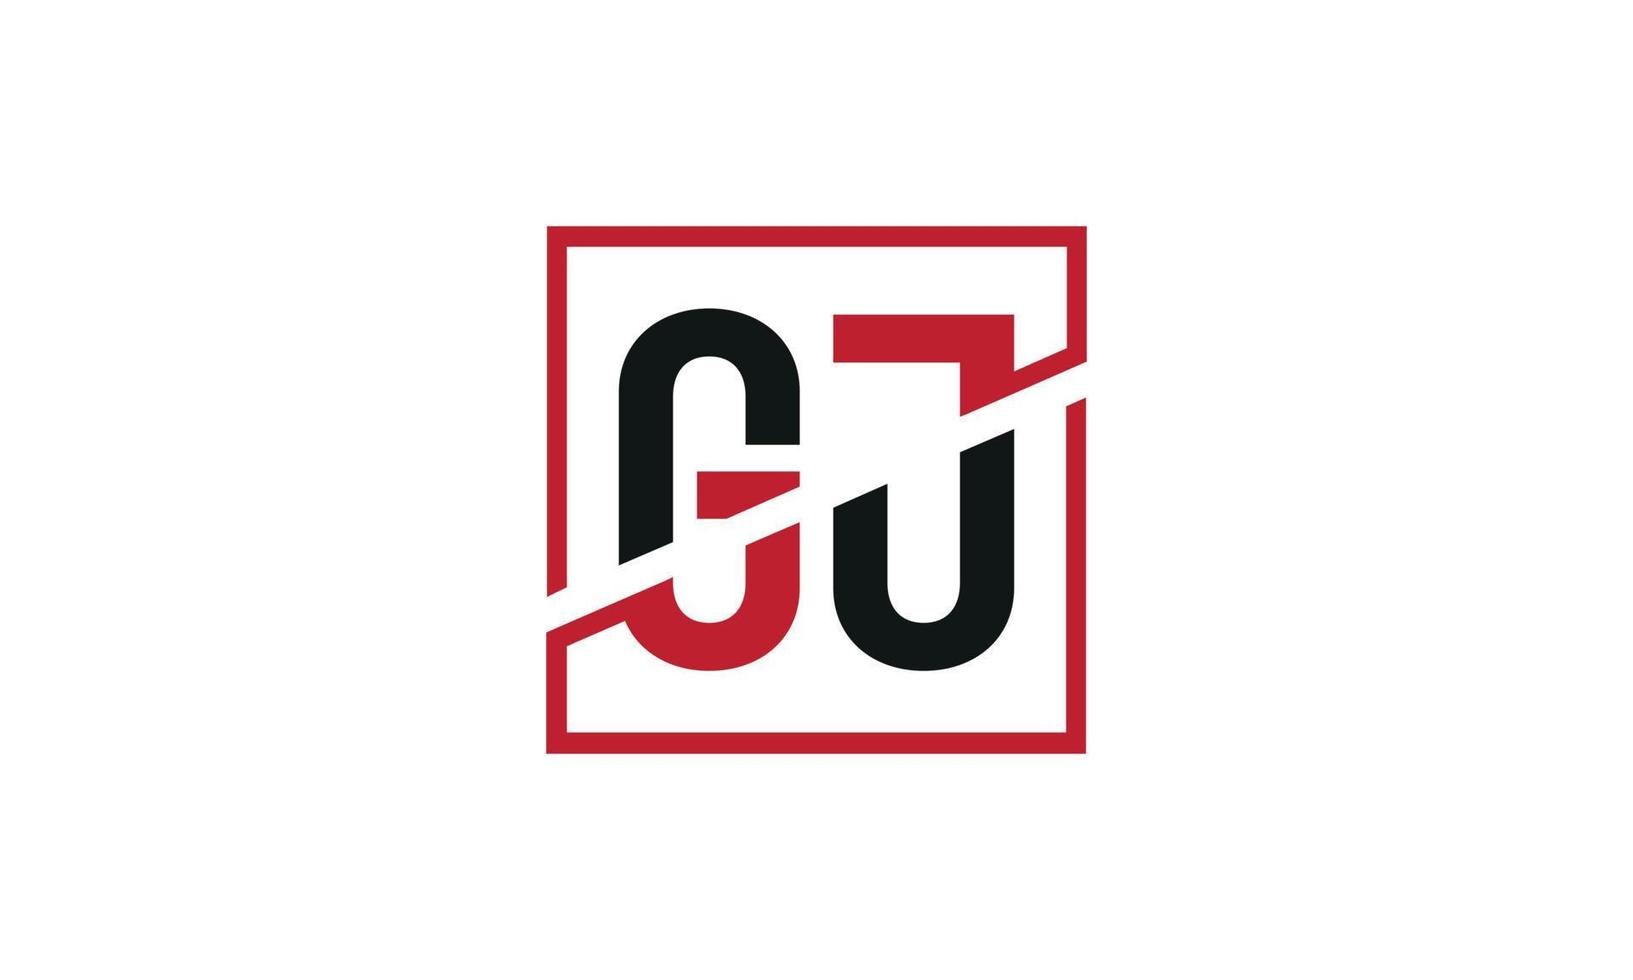 design de logotipo gj. design inicial do monograma do logotipo da letra gj na cor preta e vermelha com forma quadrada. vetor profissional